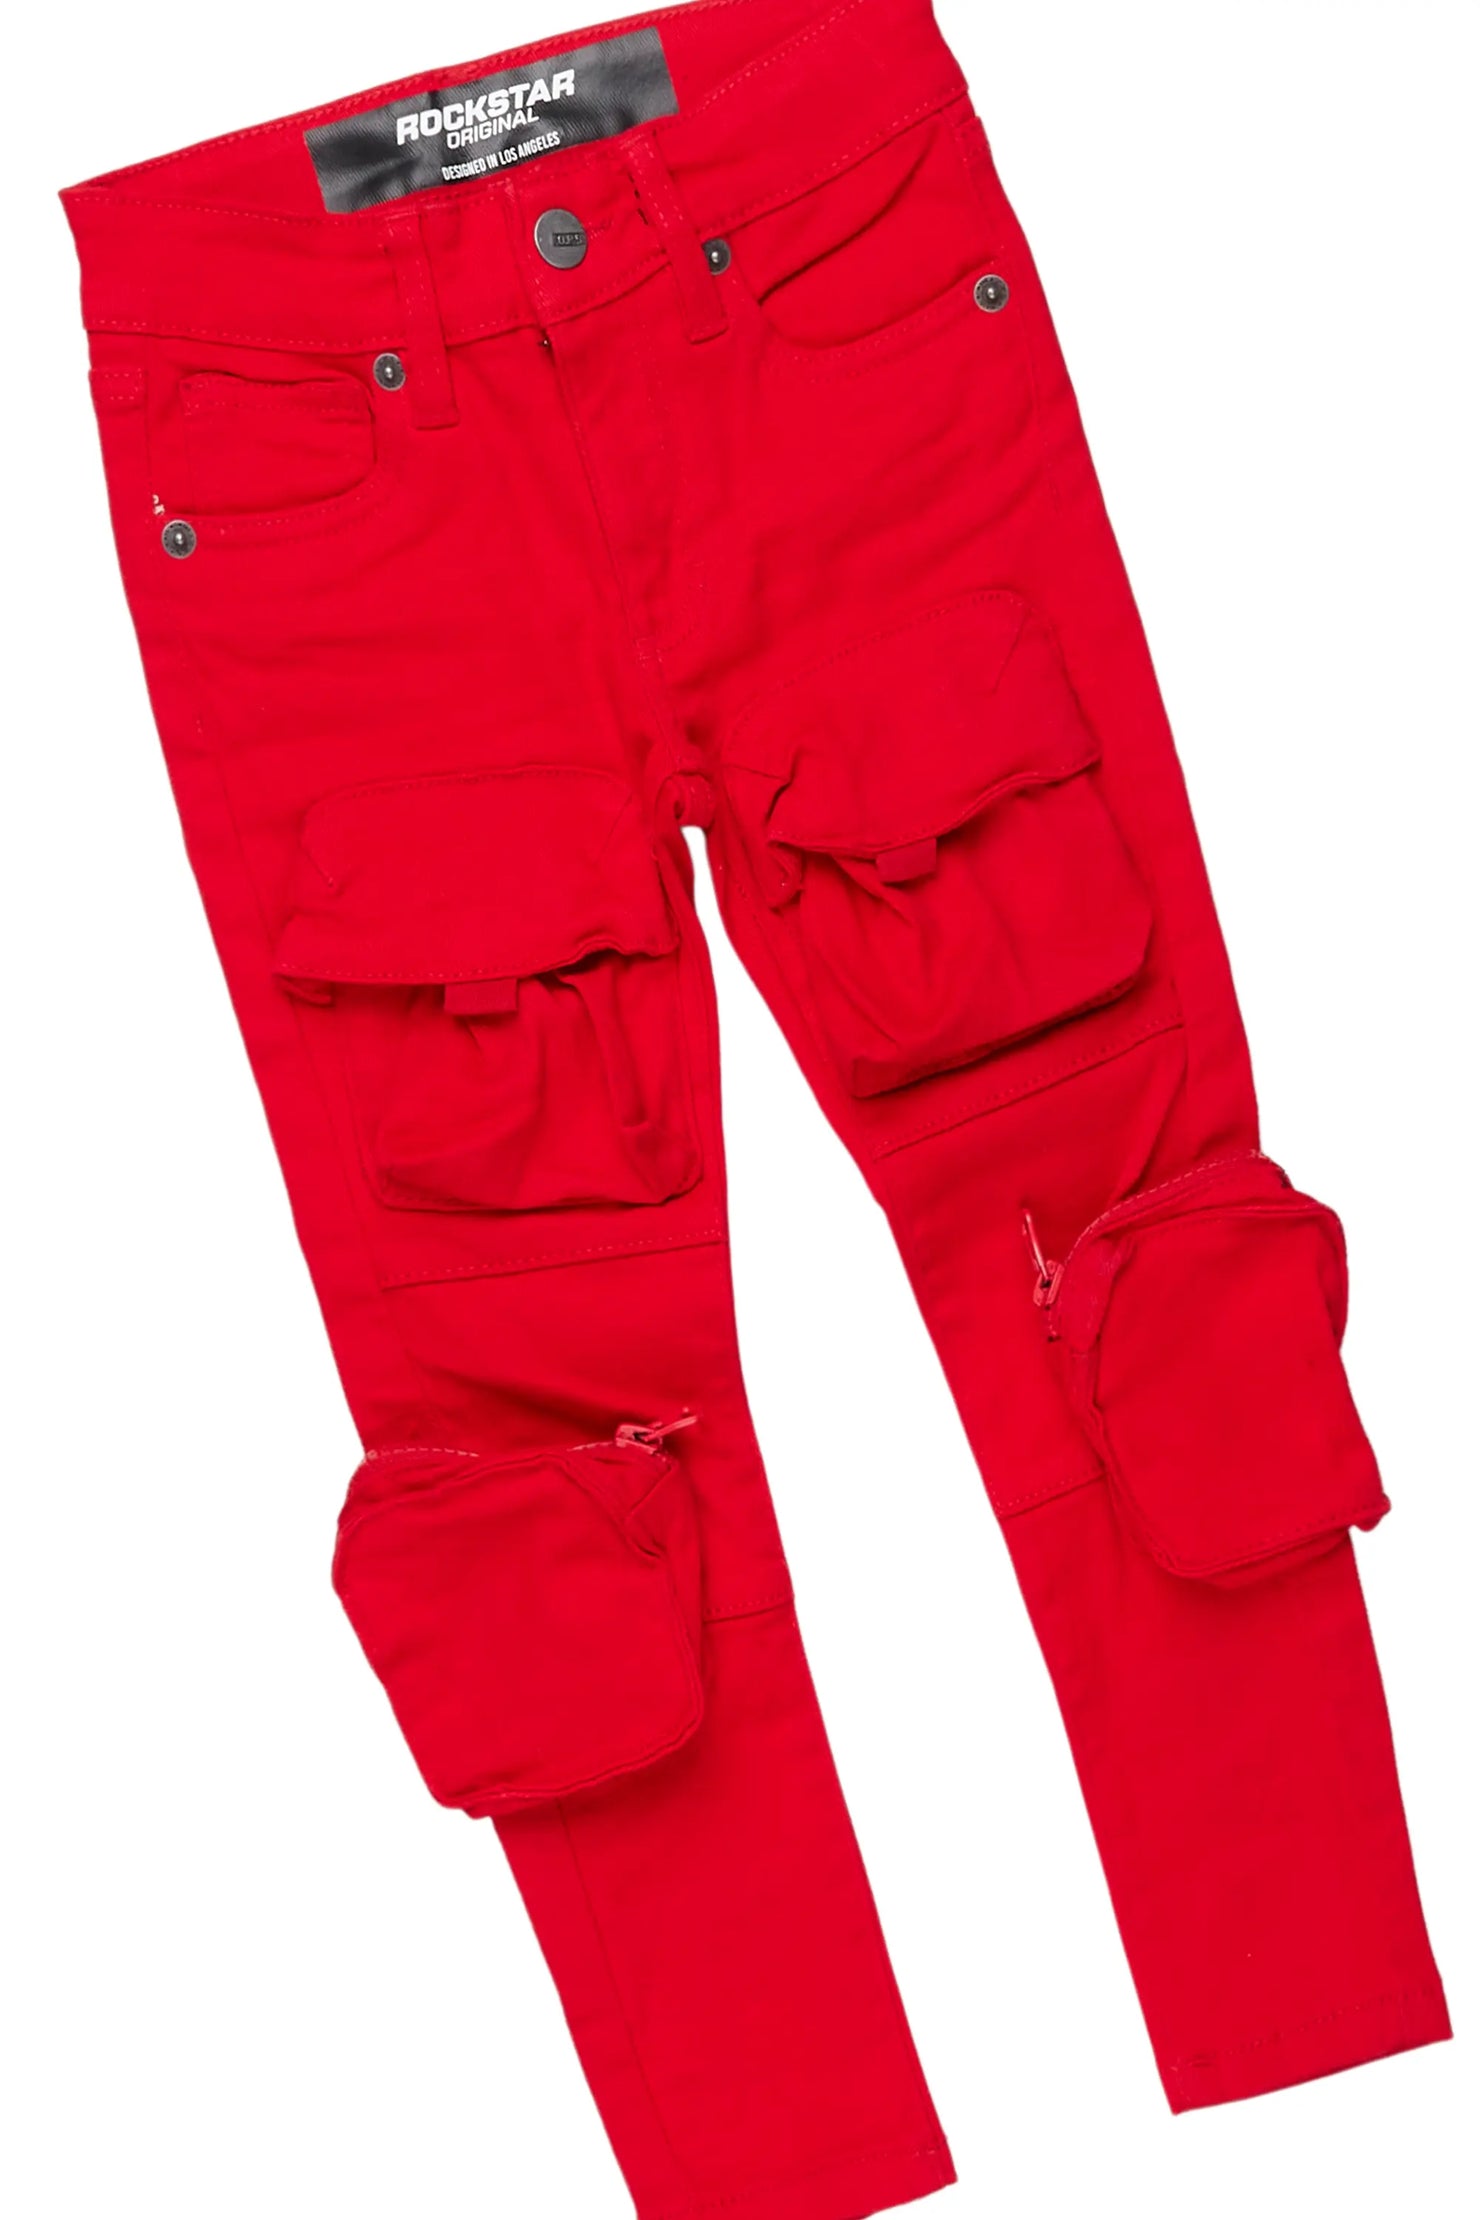 Boys Tidus Black Hoodie/Red Jean Set